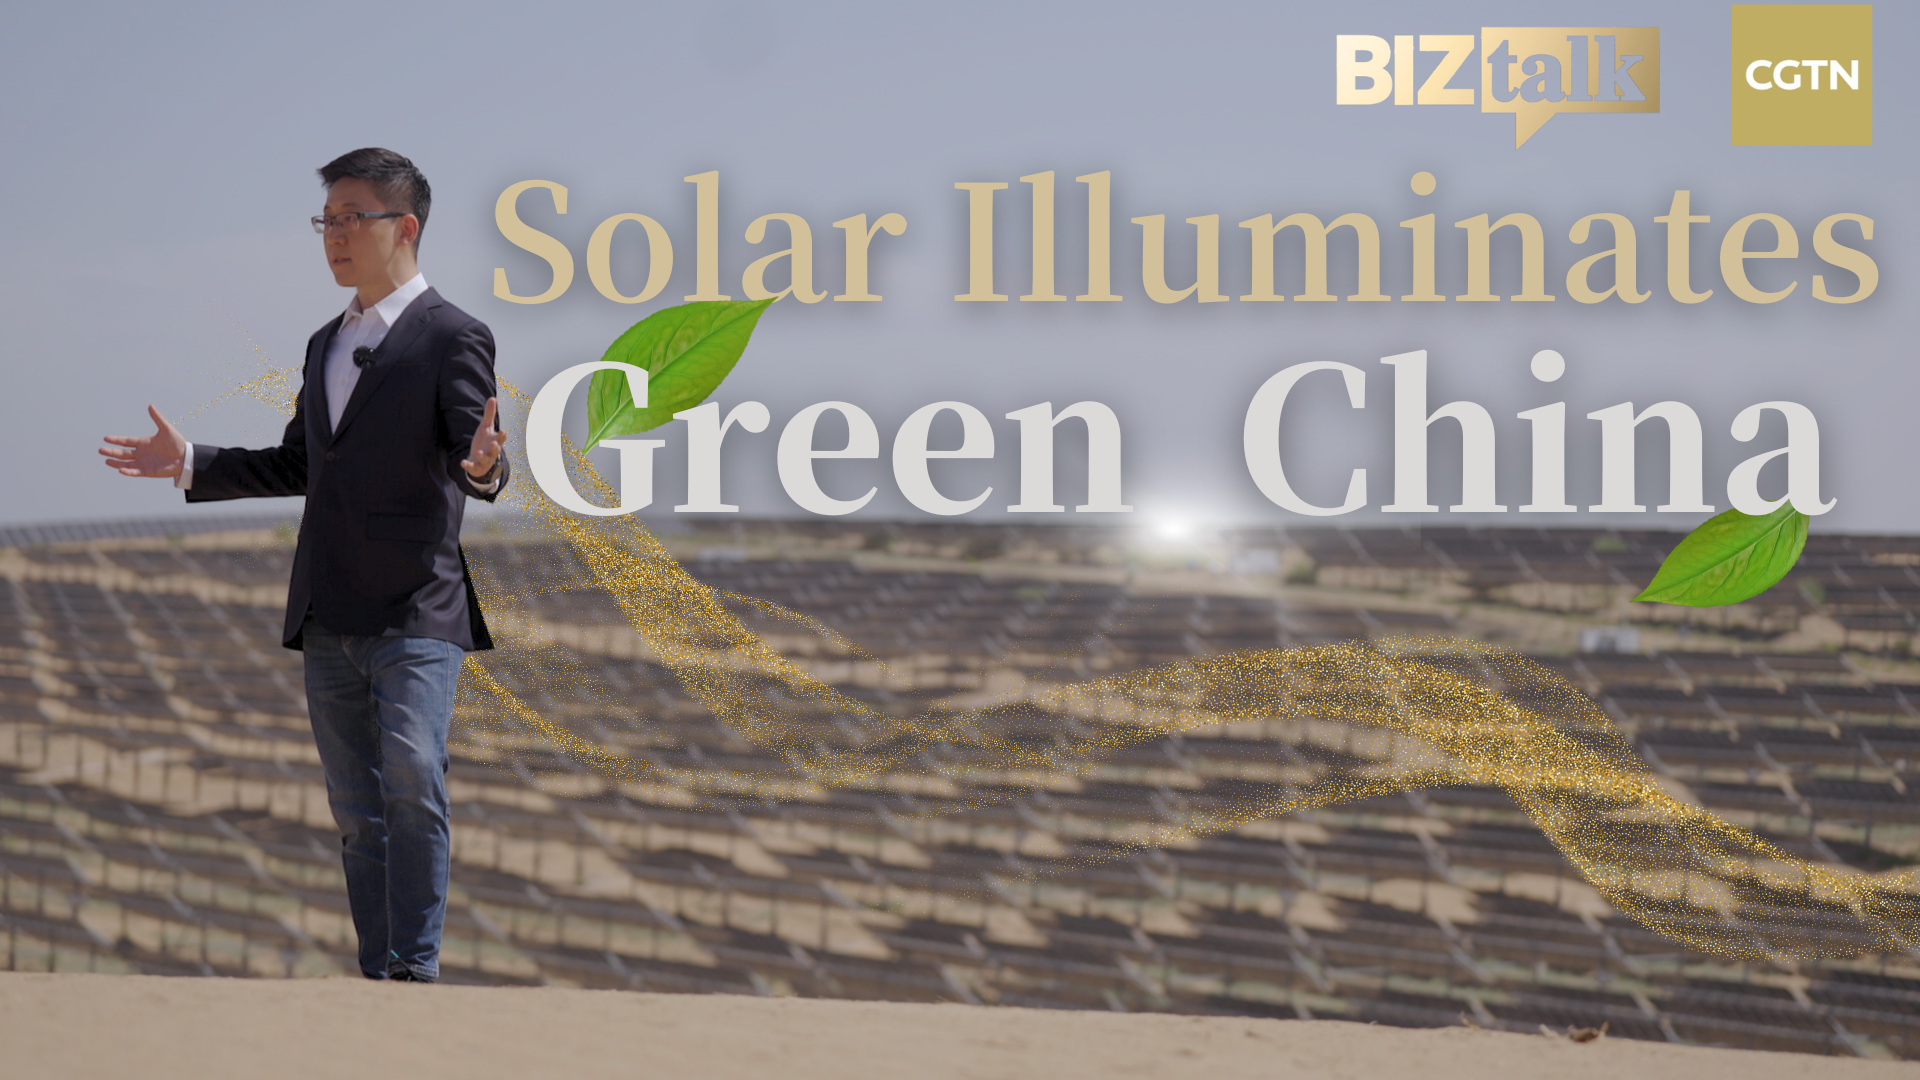 Watch: Solar illuminates green China